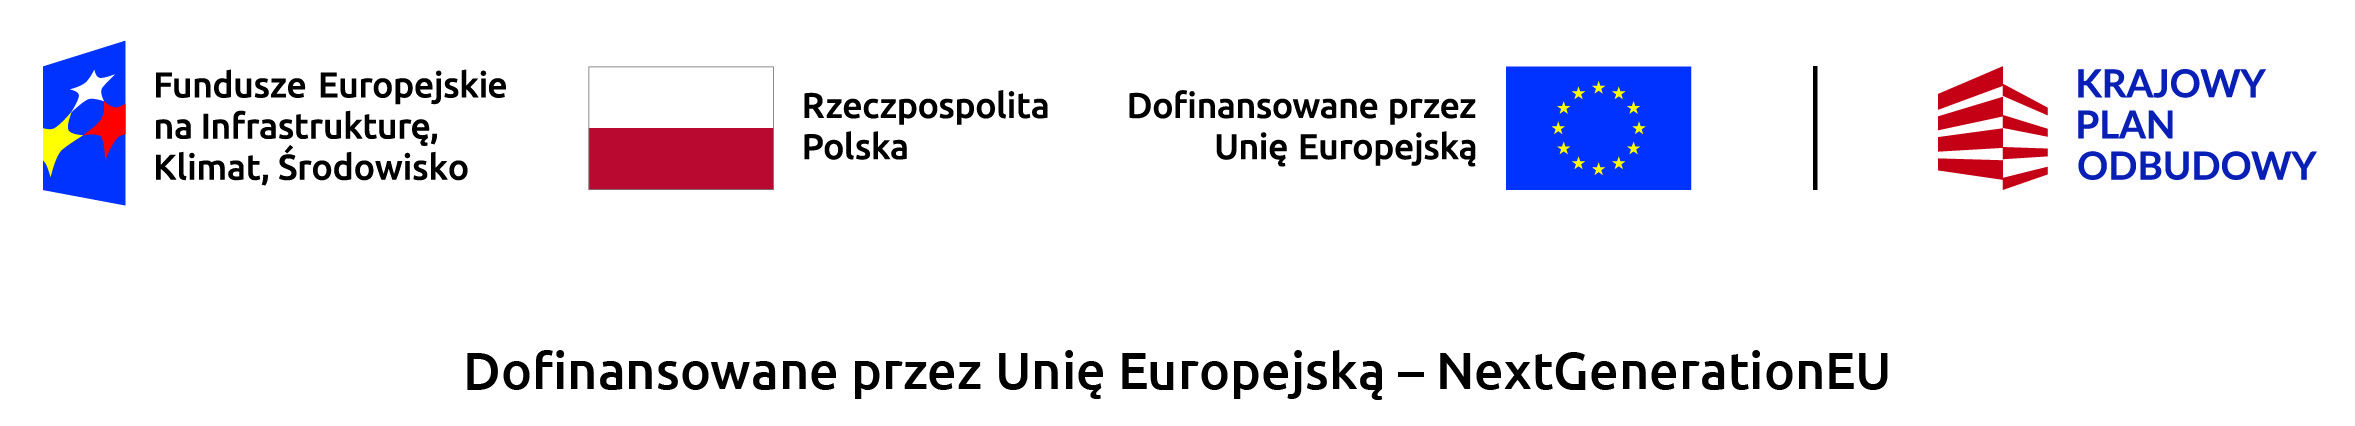 Opis alternatywny: Grafika przedstawiająca logo programów finansowych z lewej strony, począwszy od "Fundusze Europejskie na Infrastrukturę, Klimat, Środowisko", poprzez flage Polski, napis "Rzeczpospolita Polska", do flagi Unii Europejskiej i napisu "Dofinansowane przez Unię Europejską" oraz "NextGenerationEU", a po prawej stronie znak graficzny "KRAJOWY PLAN ODBUDOWY".